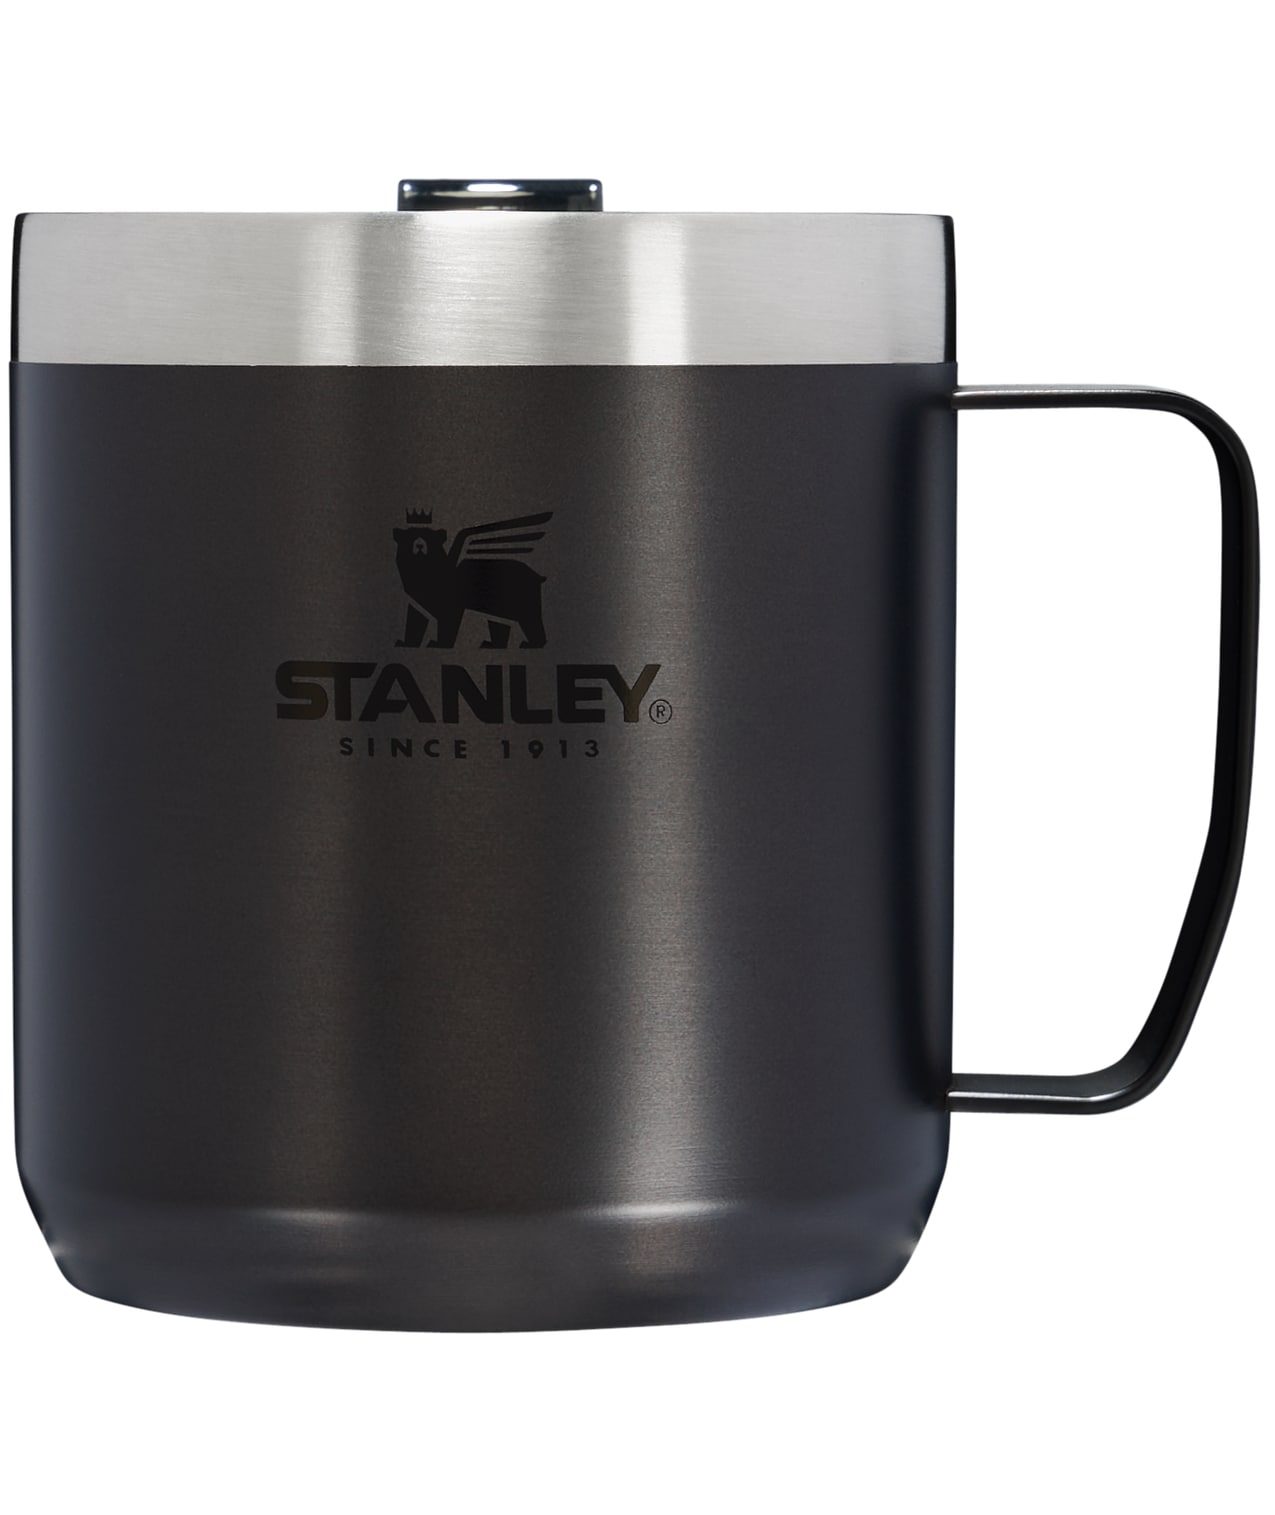 Stanley Travel mug Water Bottles & Mugs at